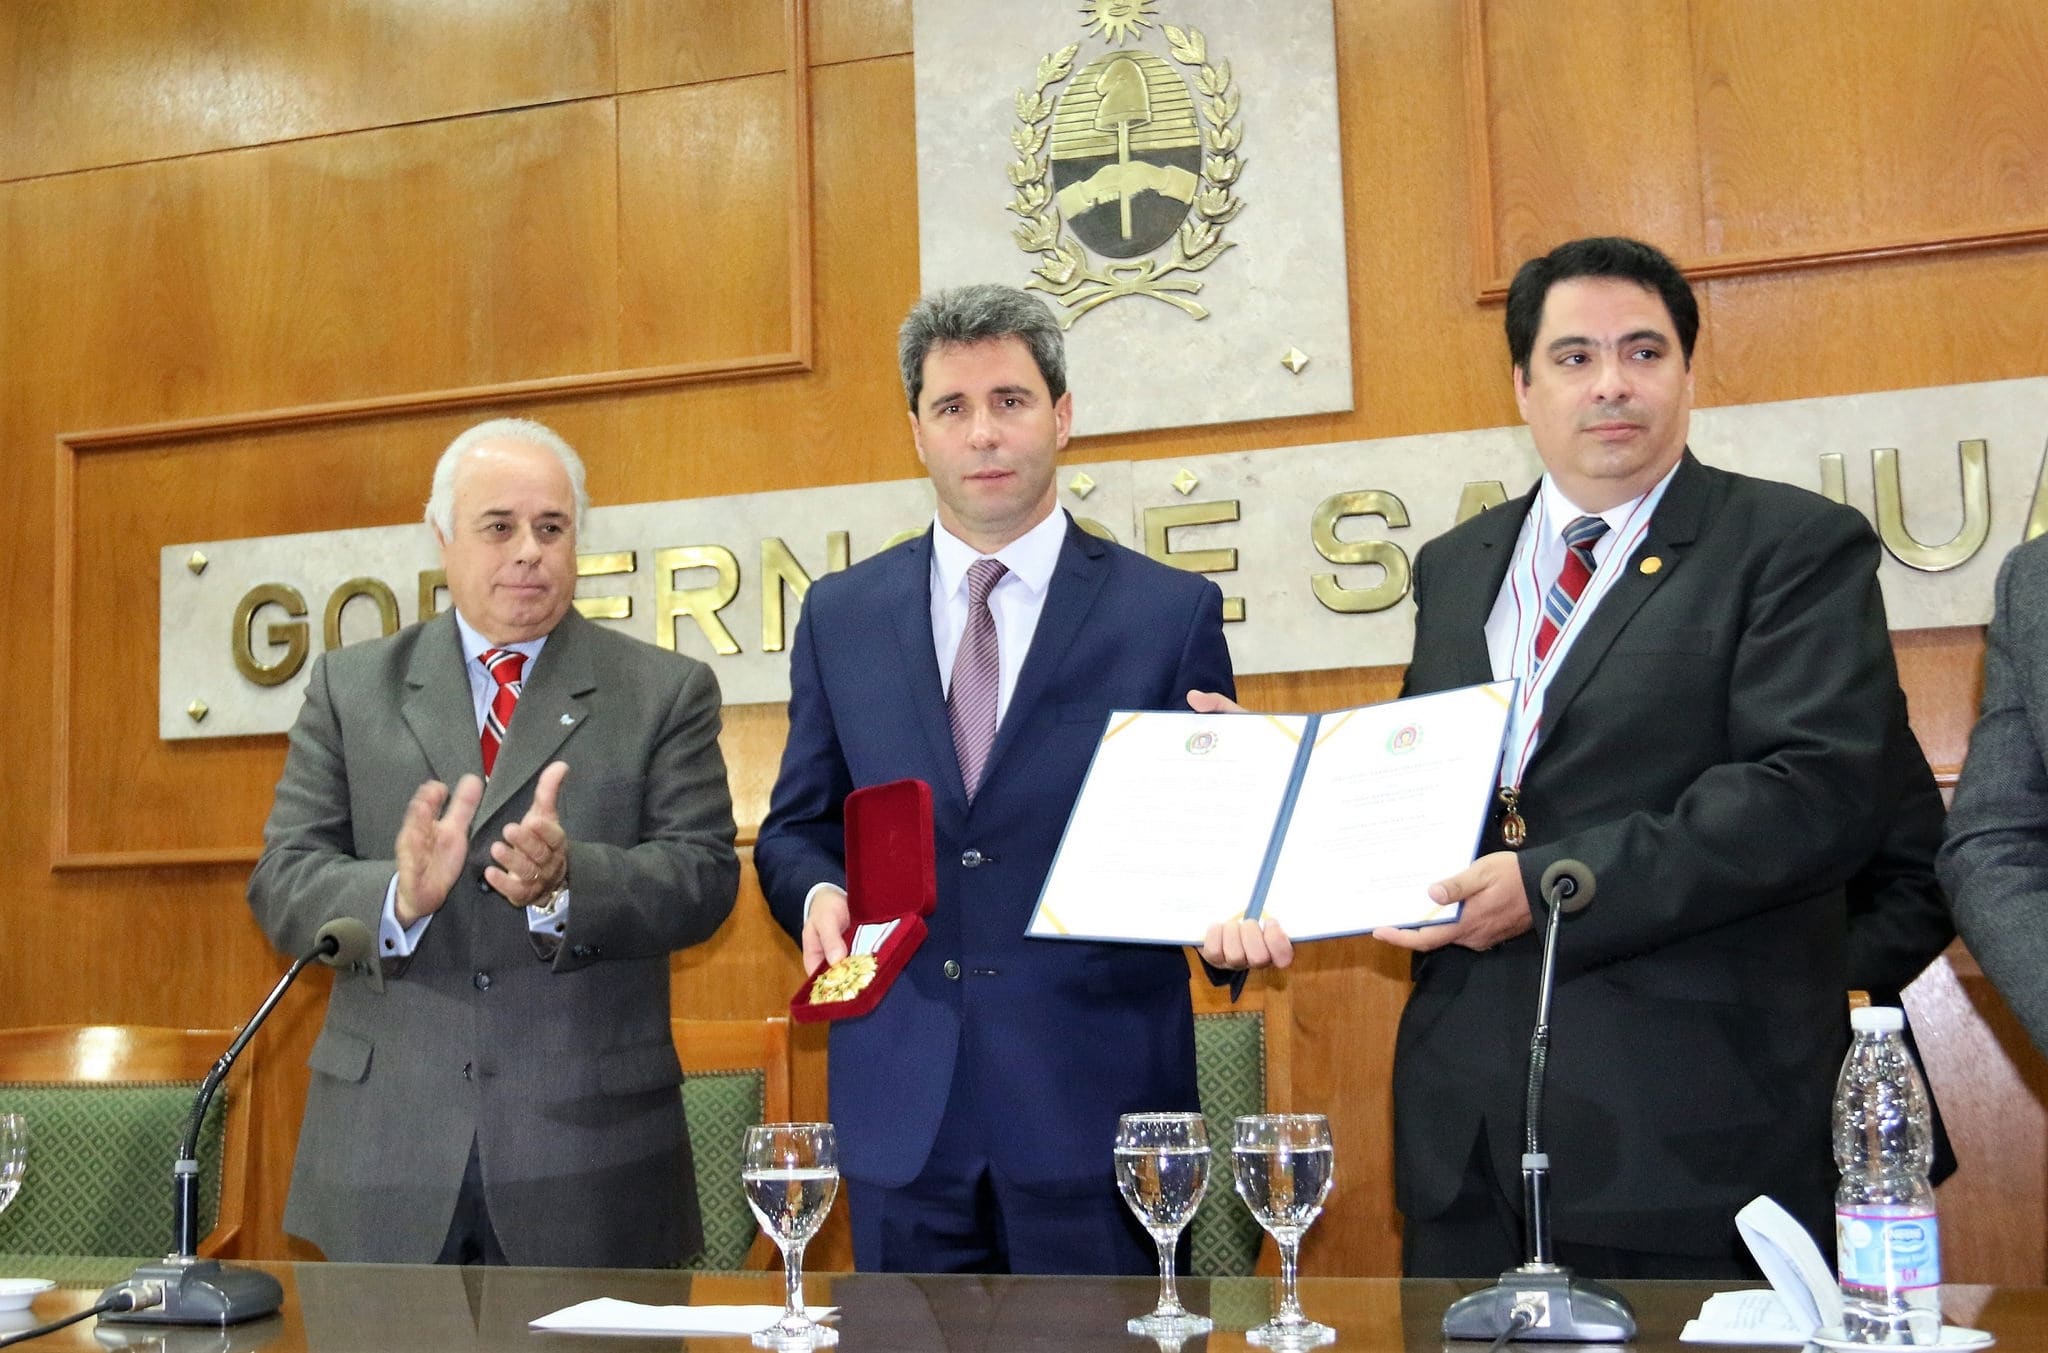 La provincia fue distinguida con el premio "Palmas Sanmartinianas".